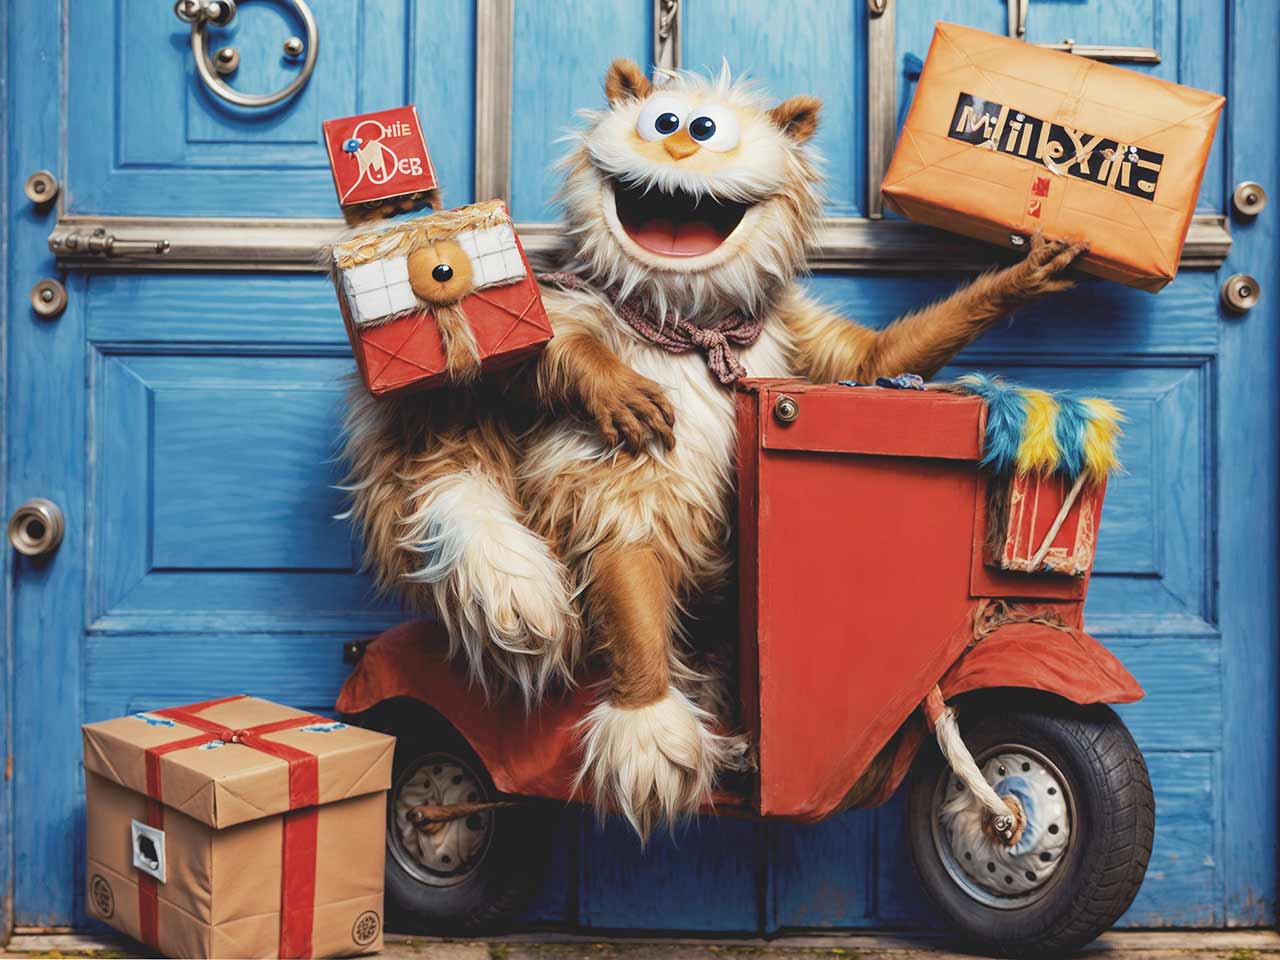 Katzenartiges Alien auf rotem Motoroller mit Paketen und Geschenken - terramedia gmbh - Wir sind Aliens